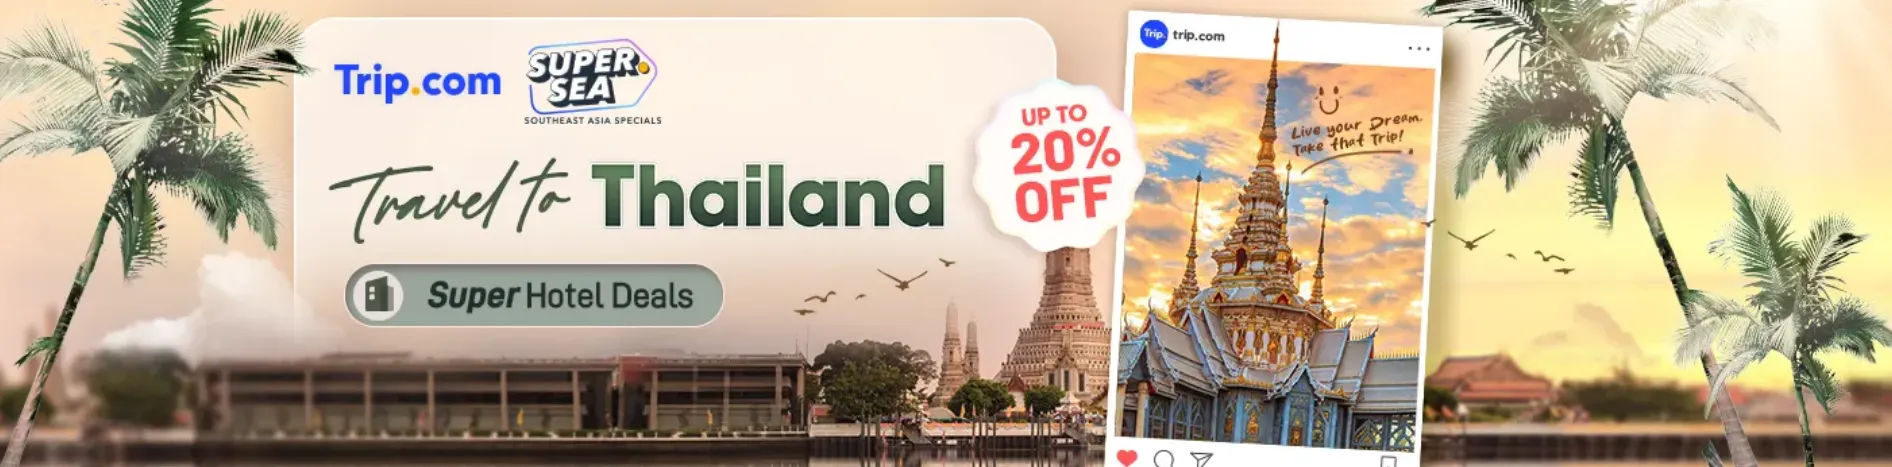 Trip.com Promo Code Australia: Travel to Thailand